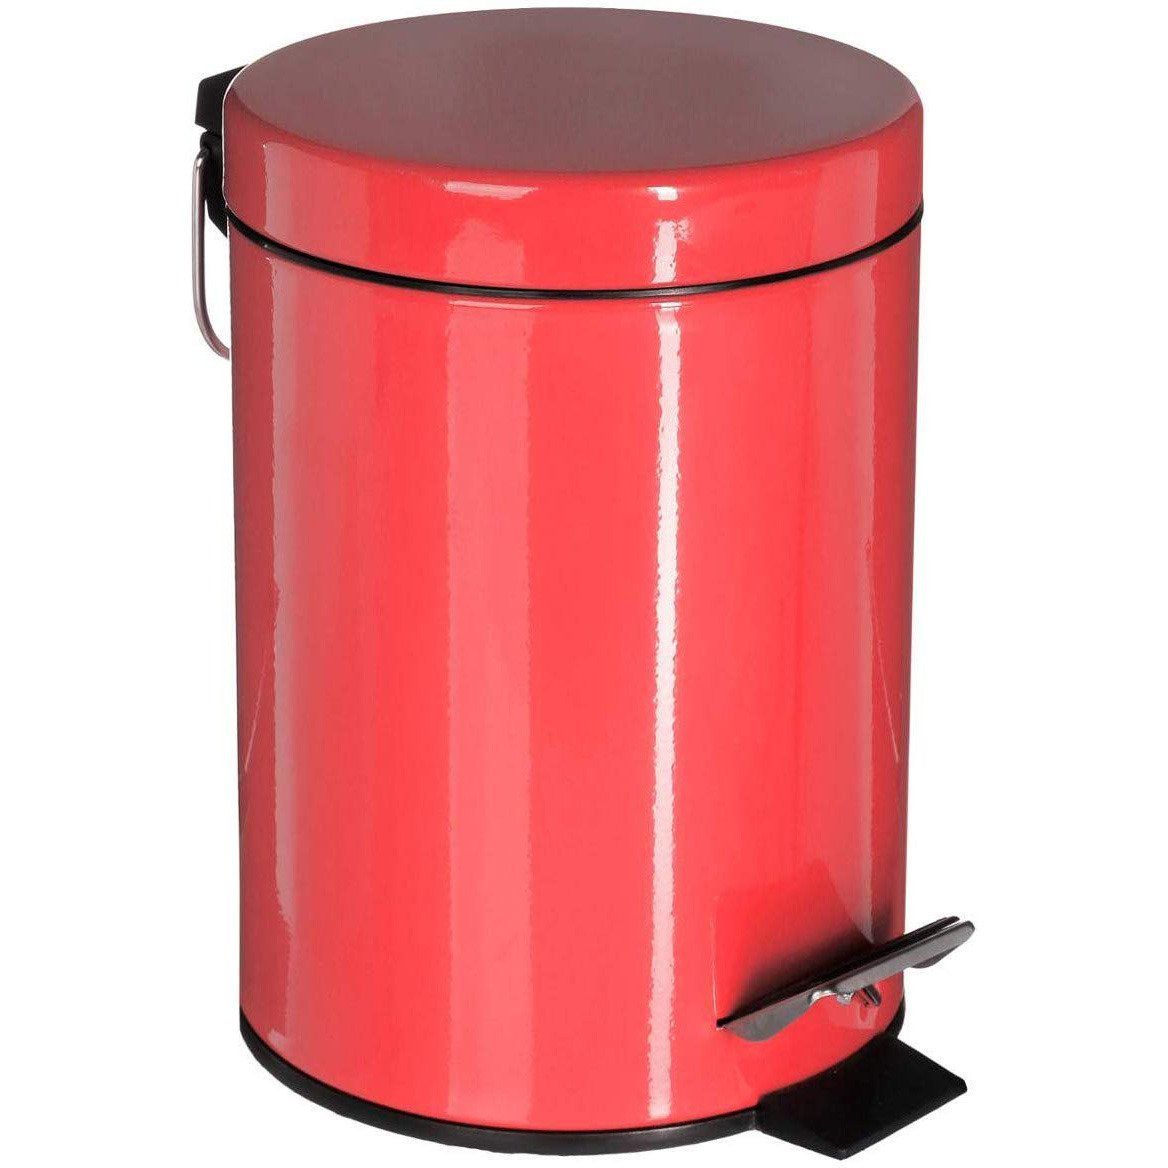 5five Simple Smart Kovový odpadkový koš v červené barvě, 3 l, 24,5x17 cm - EMAKO.CZ s.r.o.